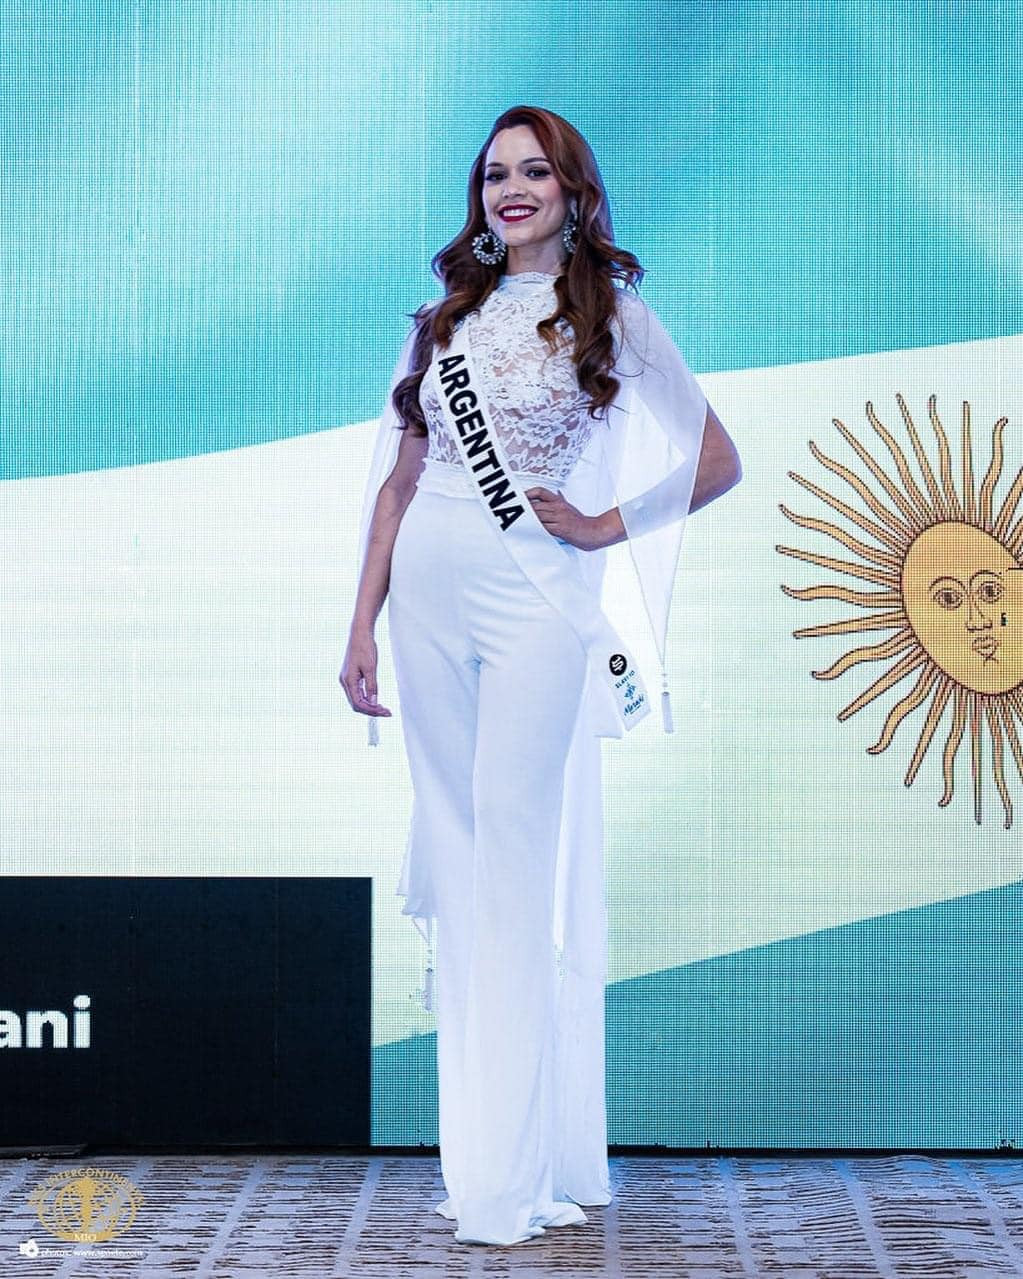 official de candidatas a miss intercontinental 2022. Q6F6sp